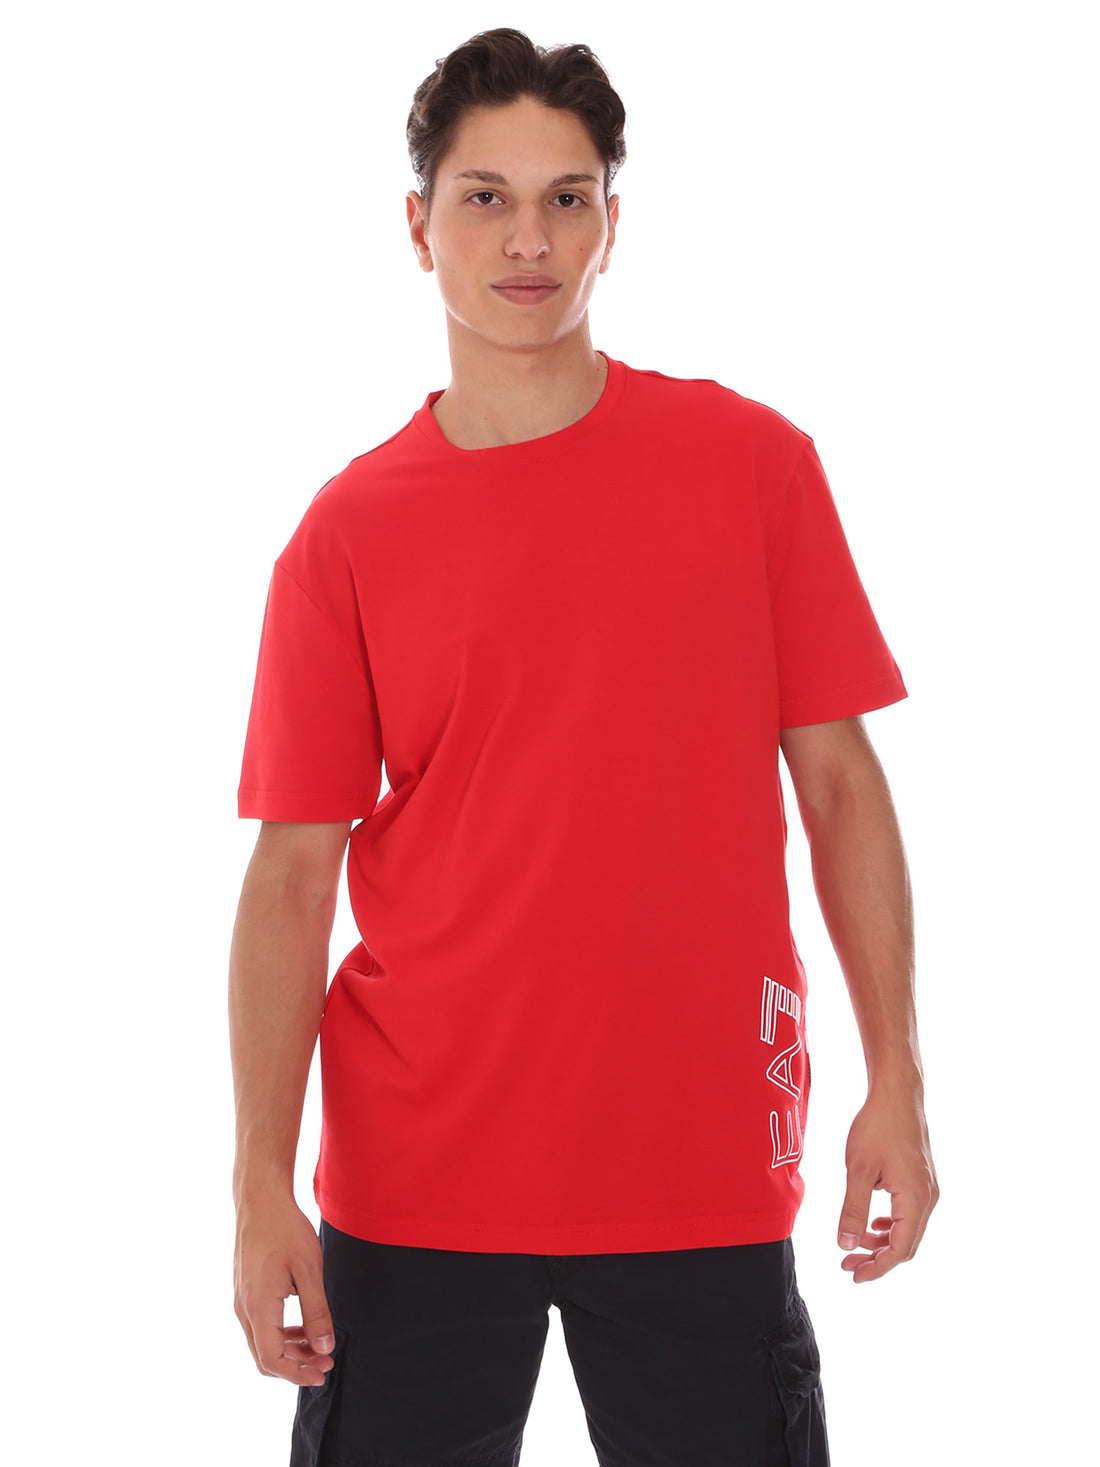 T-shirt Rosso Ea7 Emporio Armani